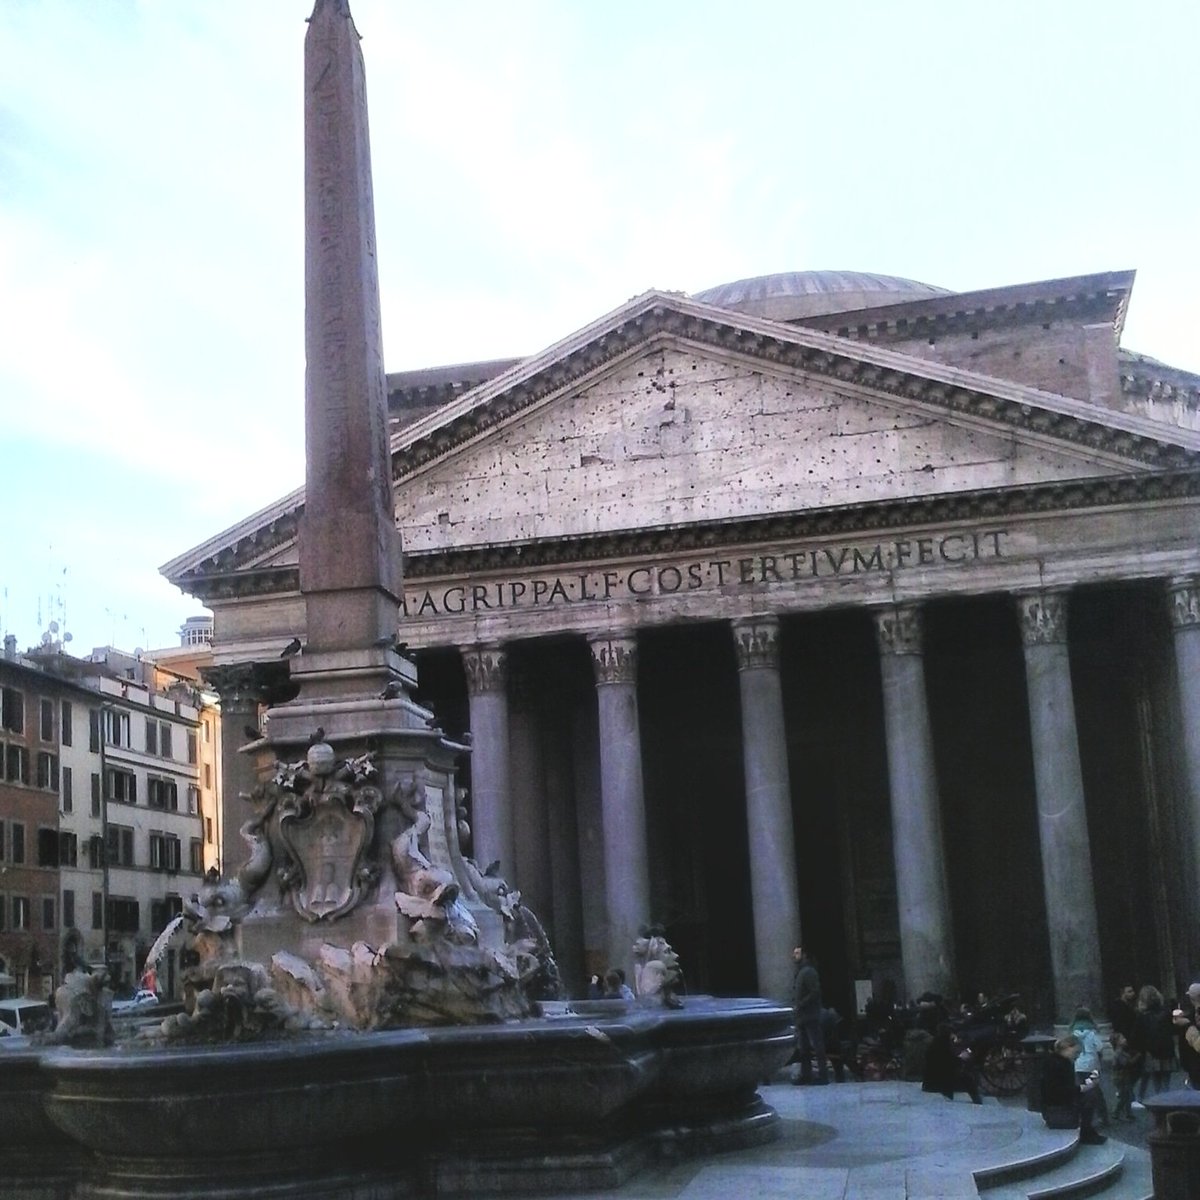 Il #Pantheon di #Roma, che è così maestoso, così perfetto, così unico...#romeisus #Rome #Gaudium @i_archi_e @Beniarcheo @Roma_Aeterna @Mustapha1508 @8romaamor8 @ROMA_TRIPS